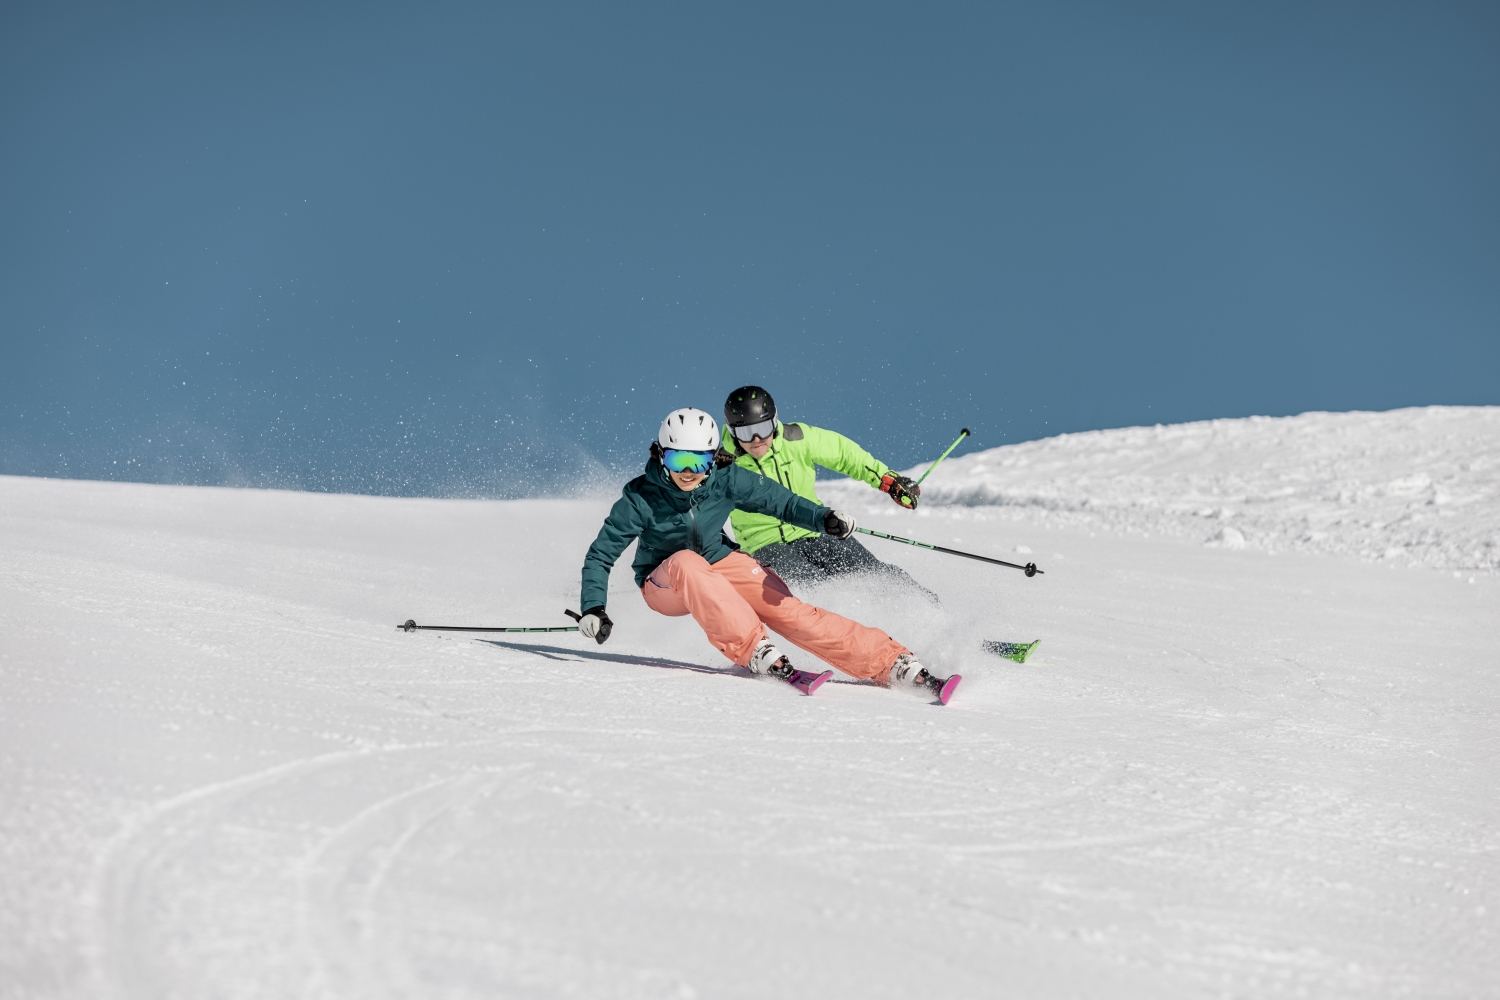 Горные лыжи с креплениями ELAN Ace Speed Magic Ps + Elx 11,0 Shift